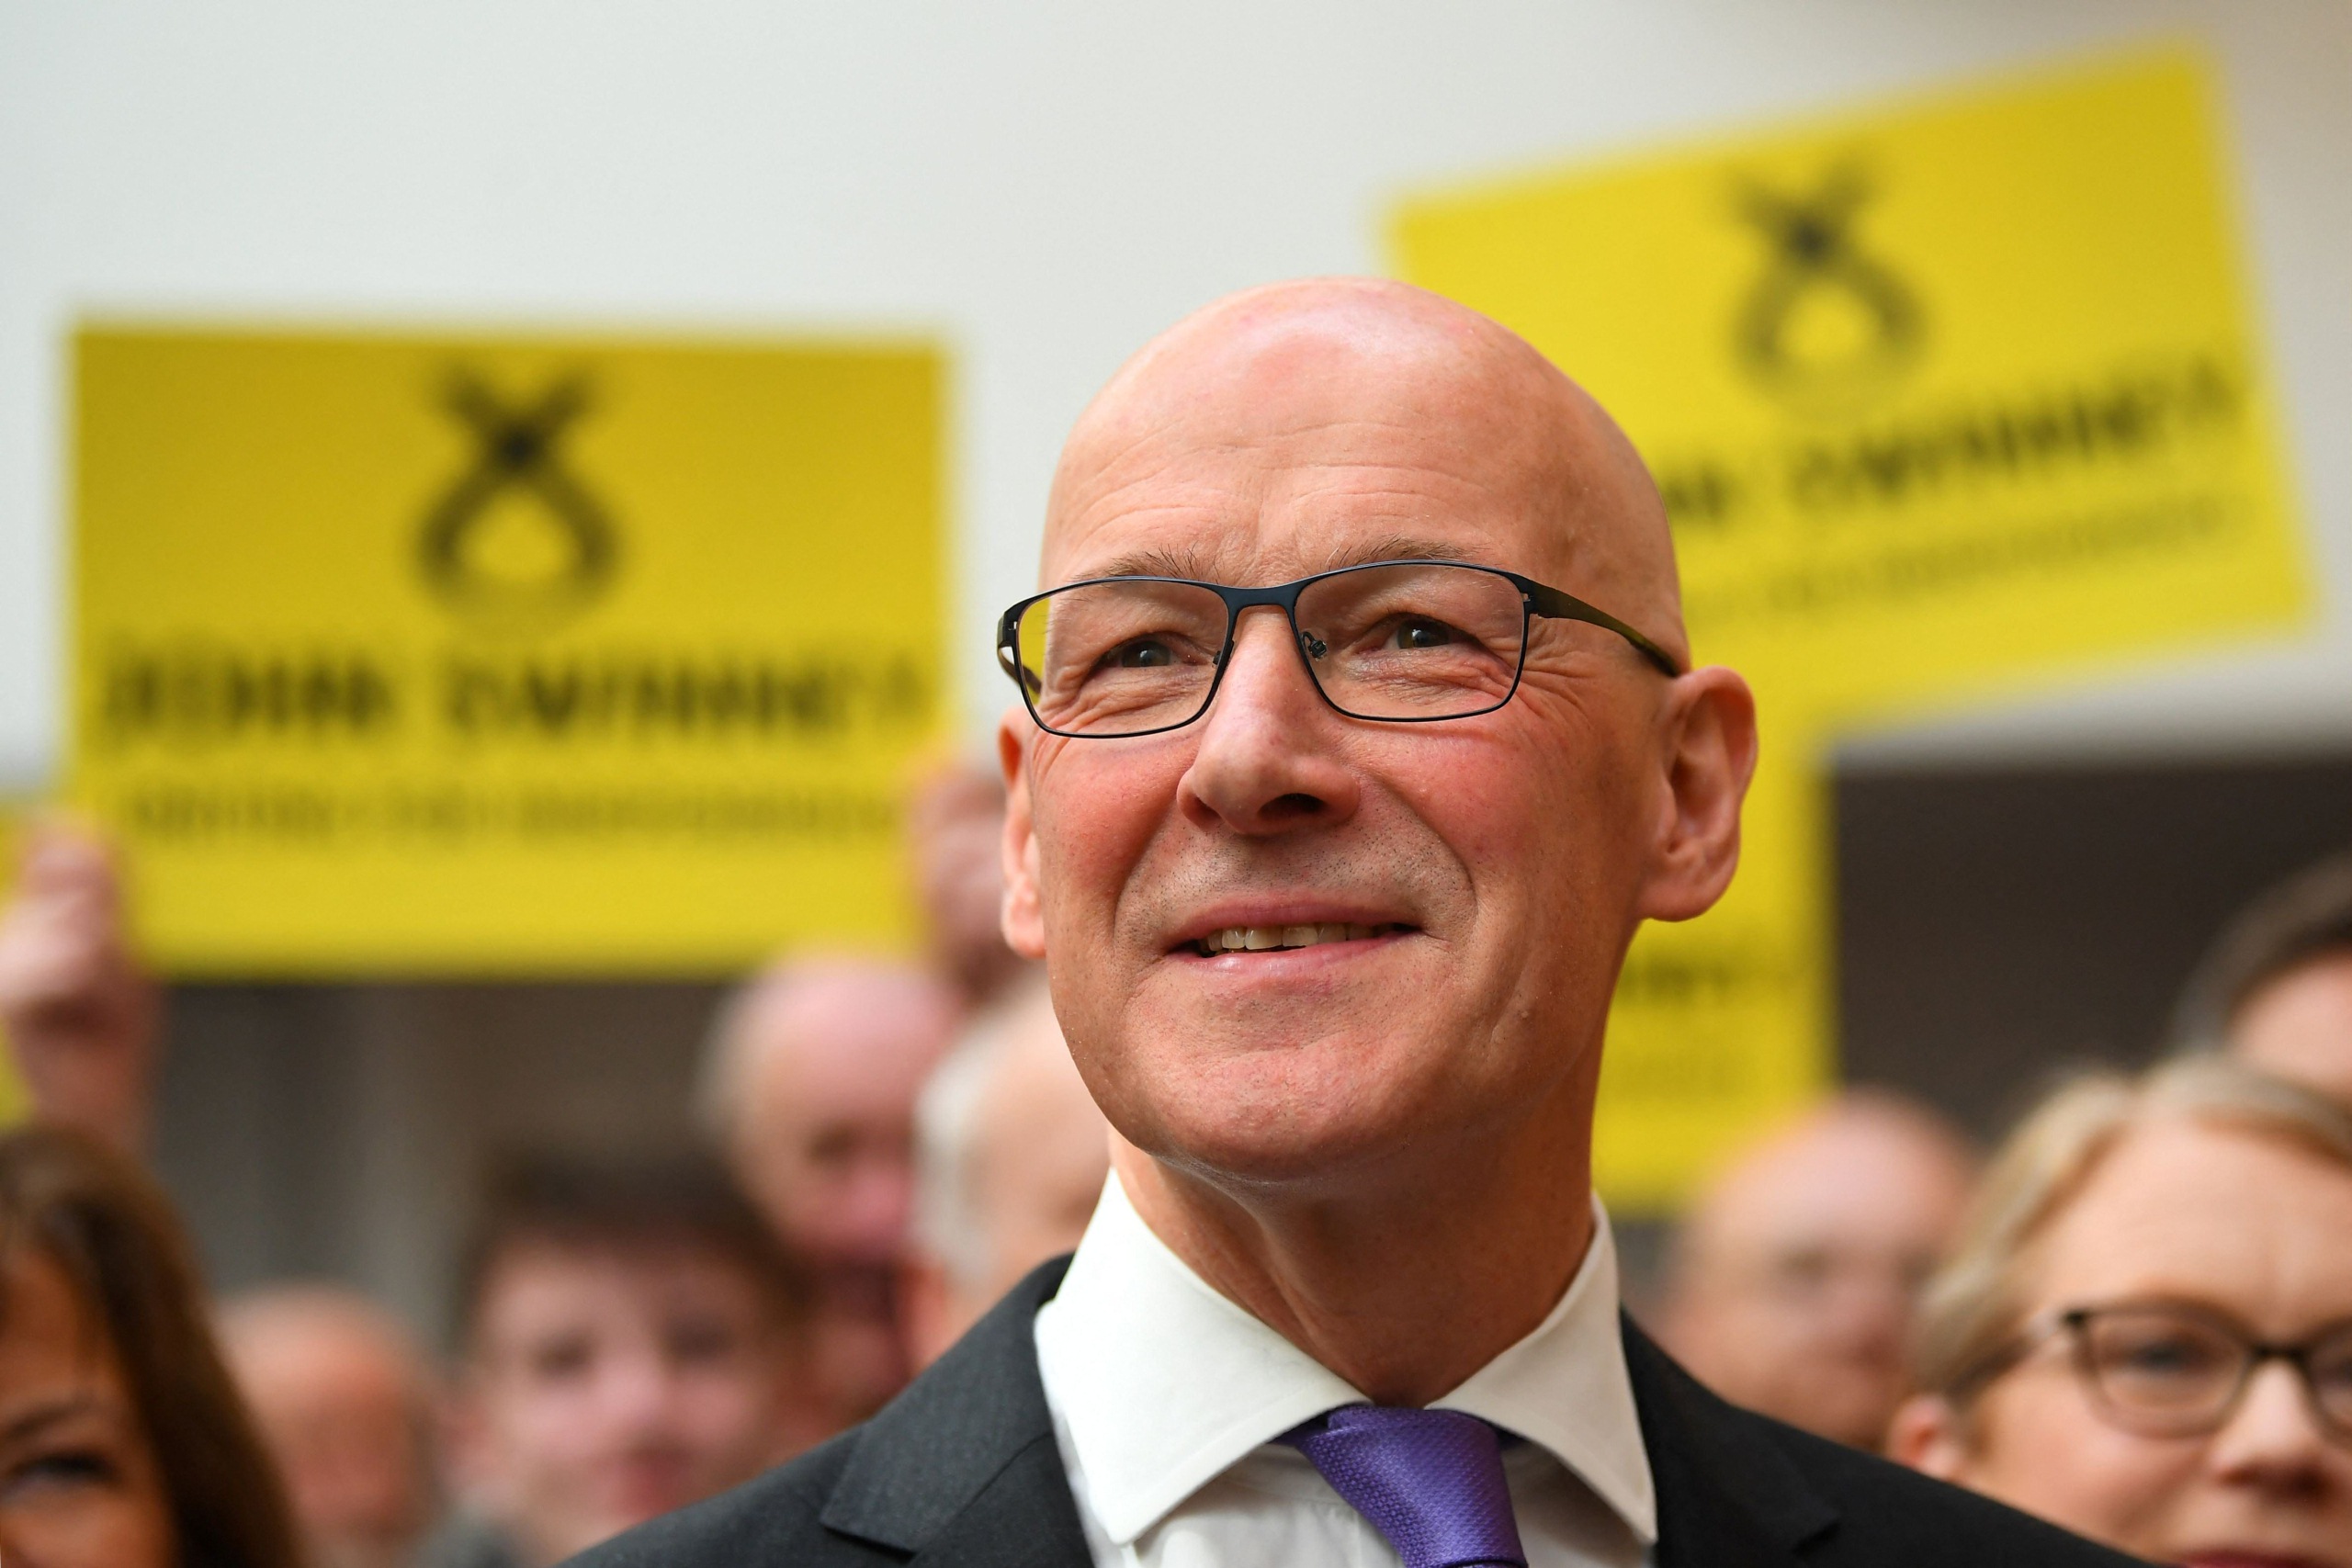 veteraanipoliitikko john swinney nousemassa skotlannin pääministeriksi